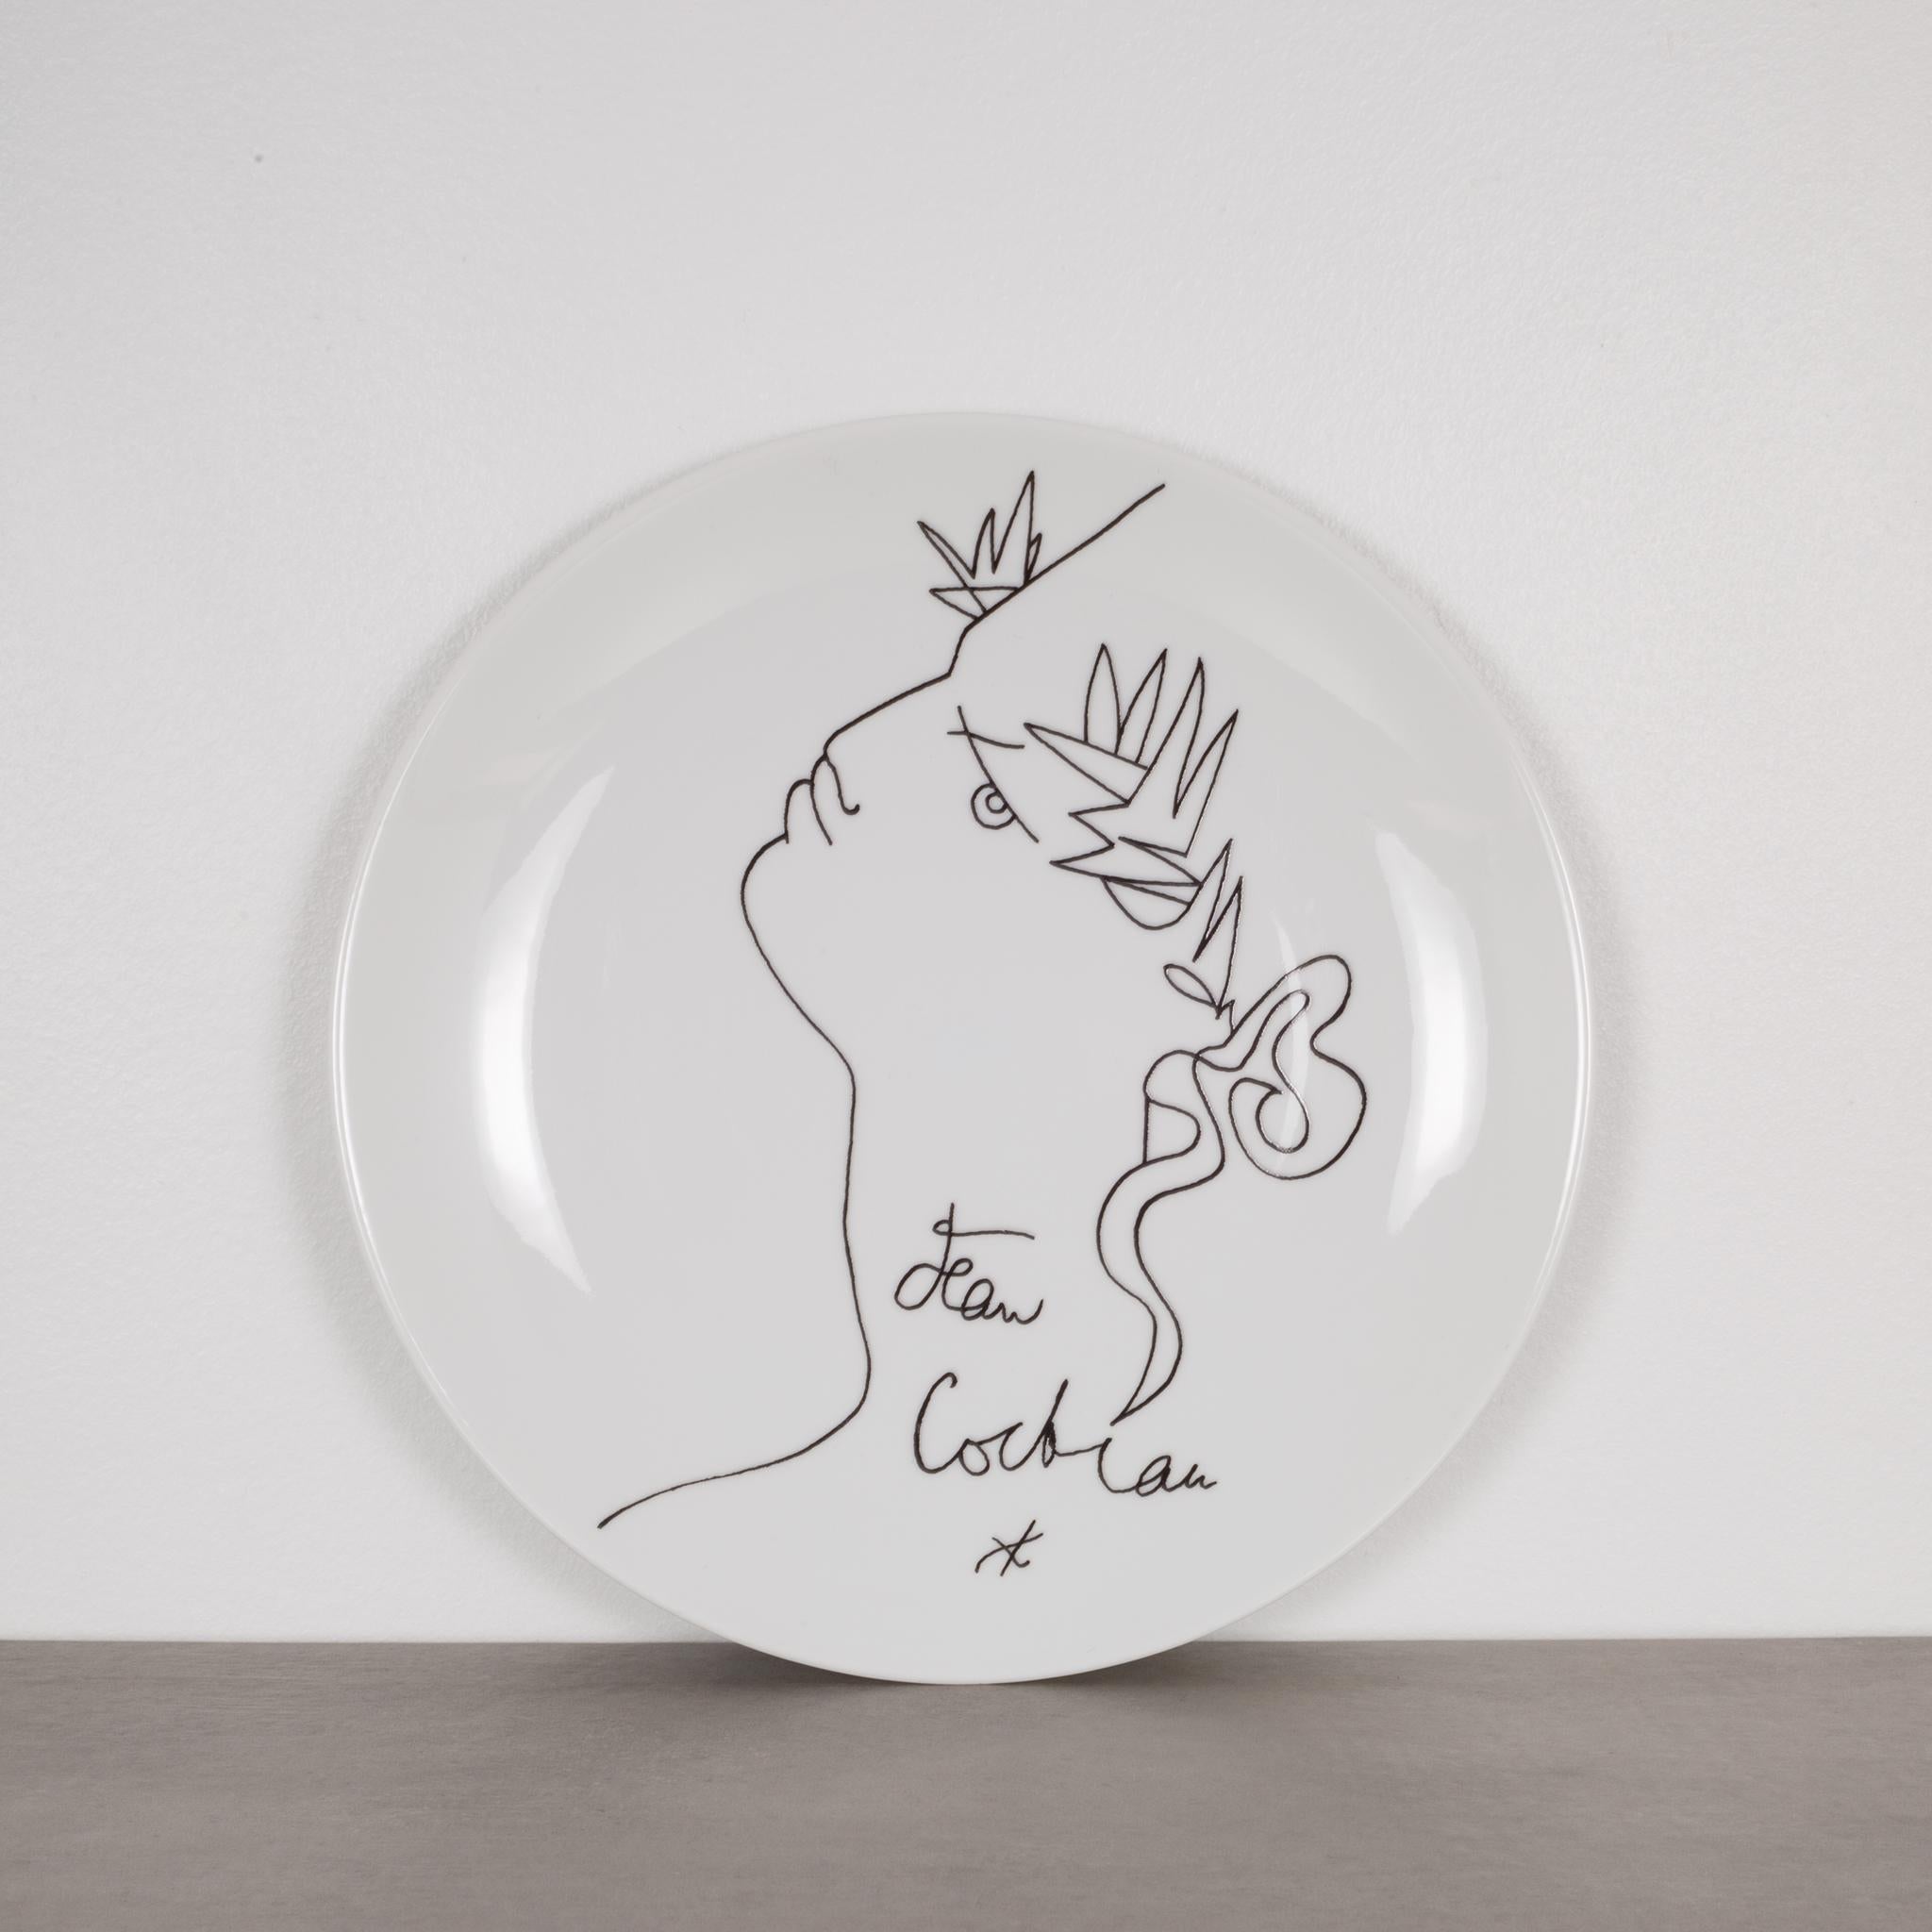 Jean Cocteau Promo-Ceram Midcentury Plates-Set of 4, circa 1950-1980 1